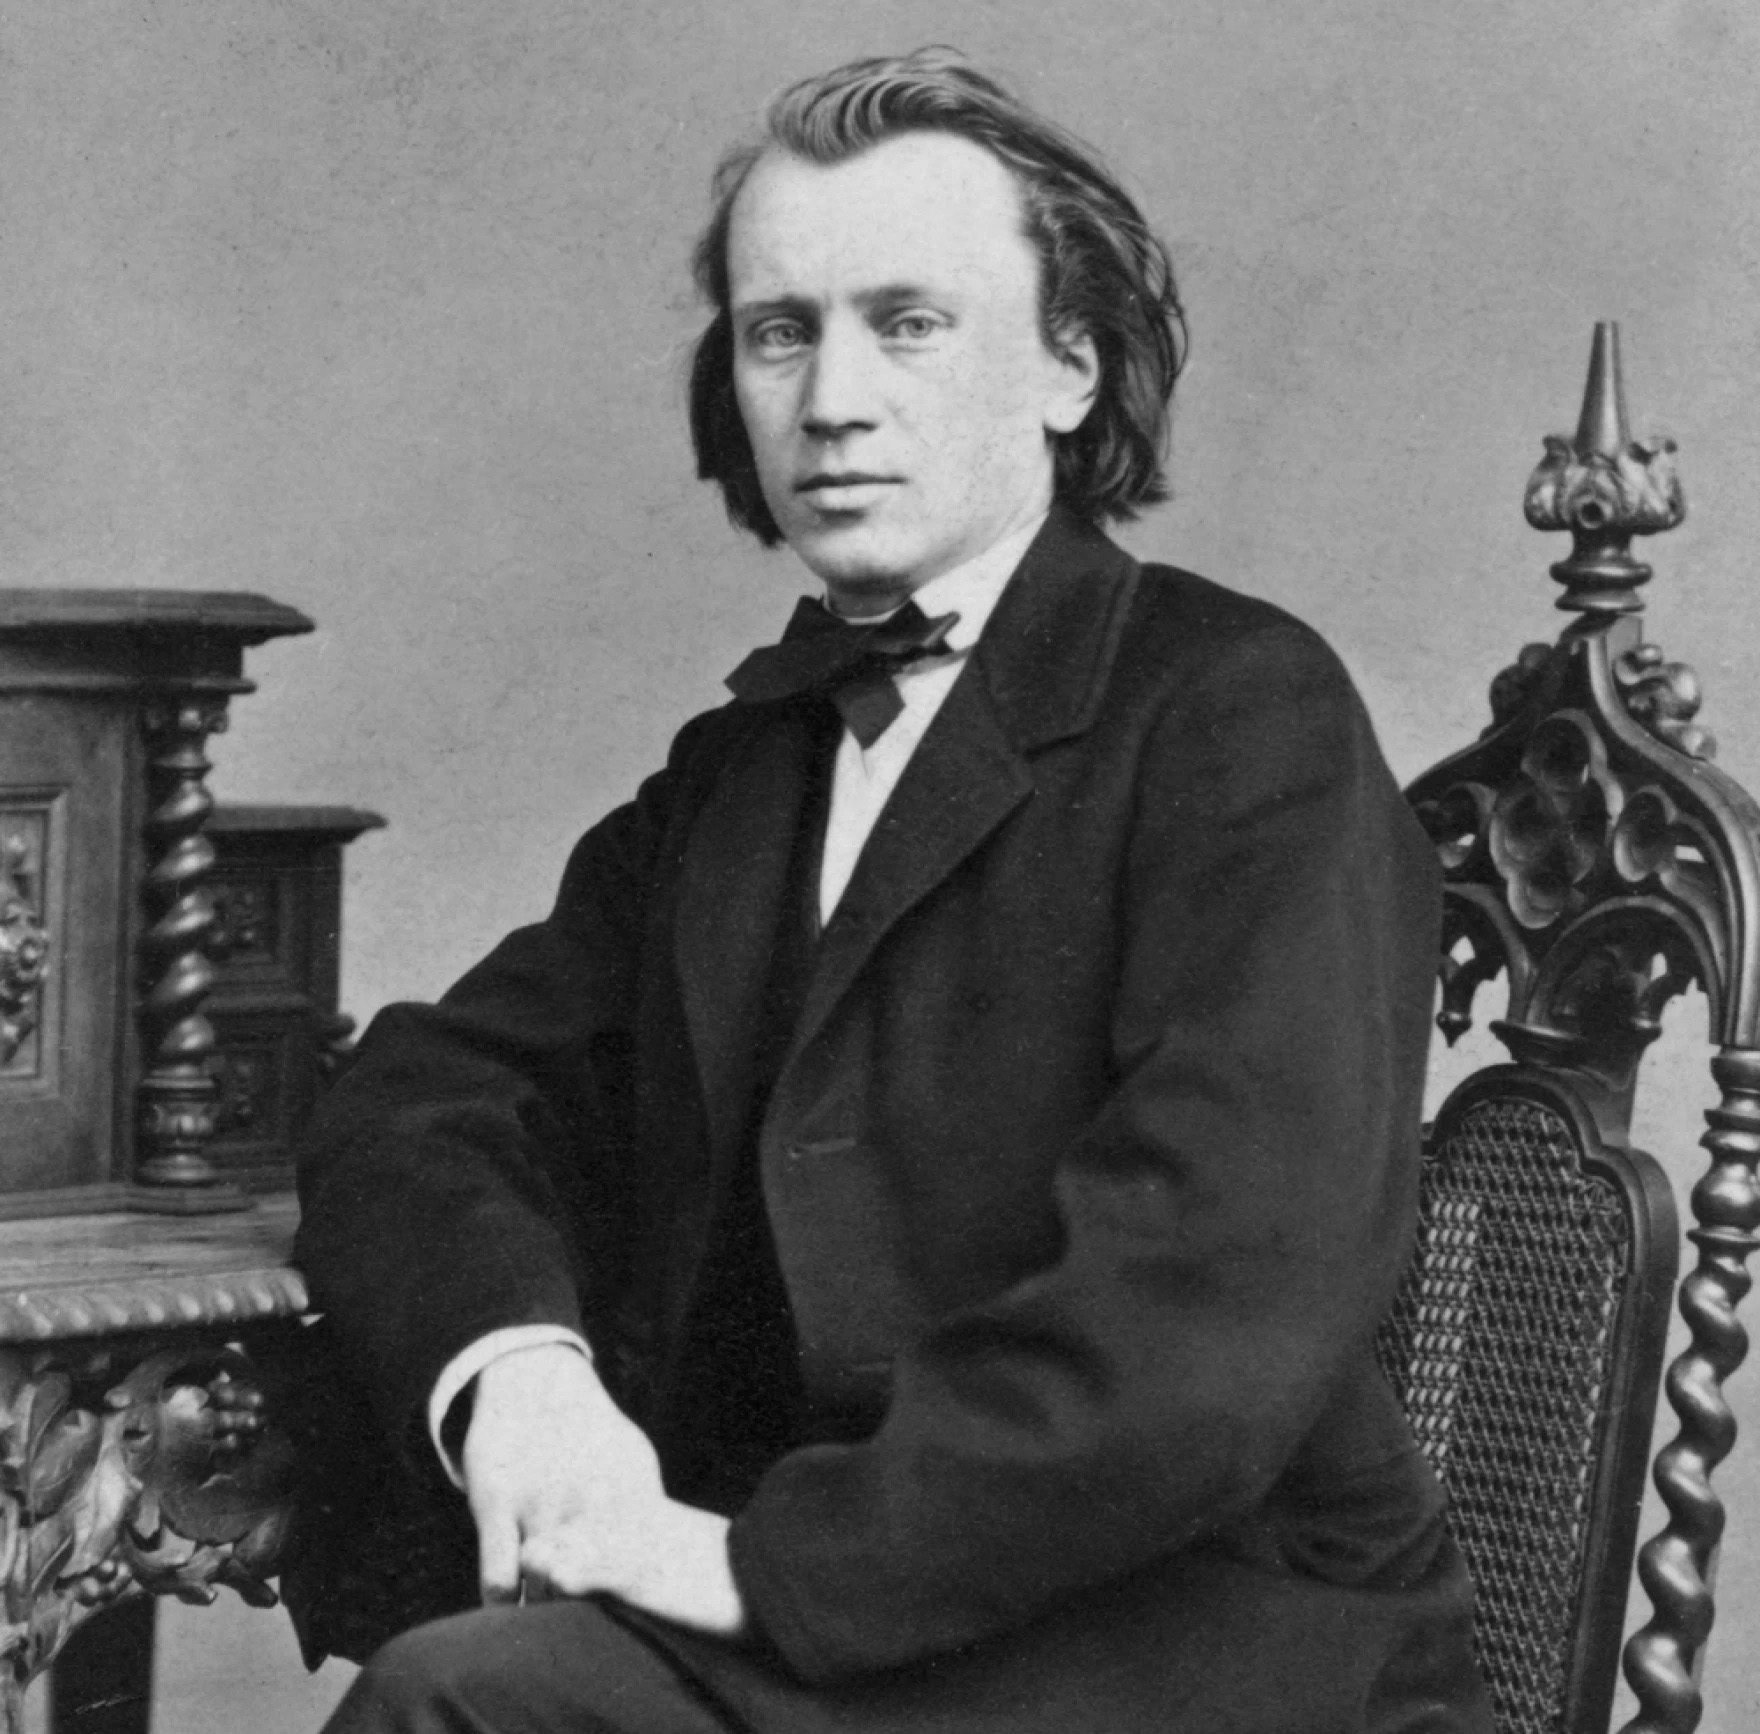 Johannes Brahms</p>
<p>(Hamburg, 7. svibnja 1833. – Beč, 3. travnja 1897.), njemački skladatelj.